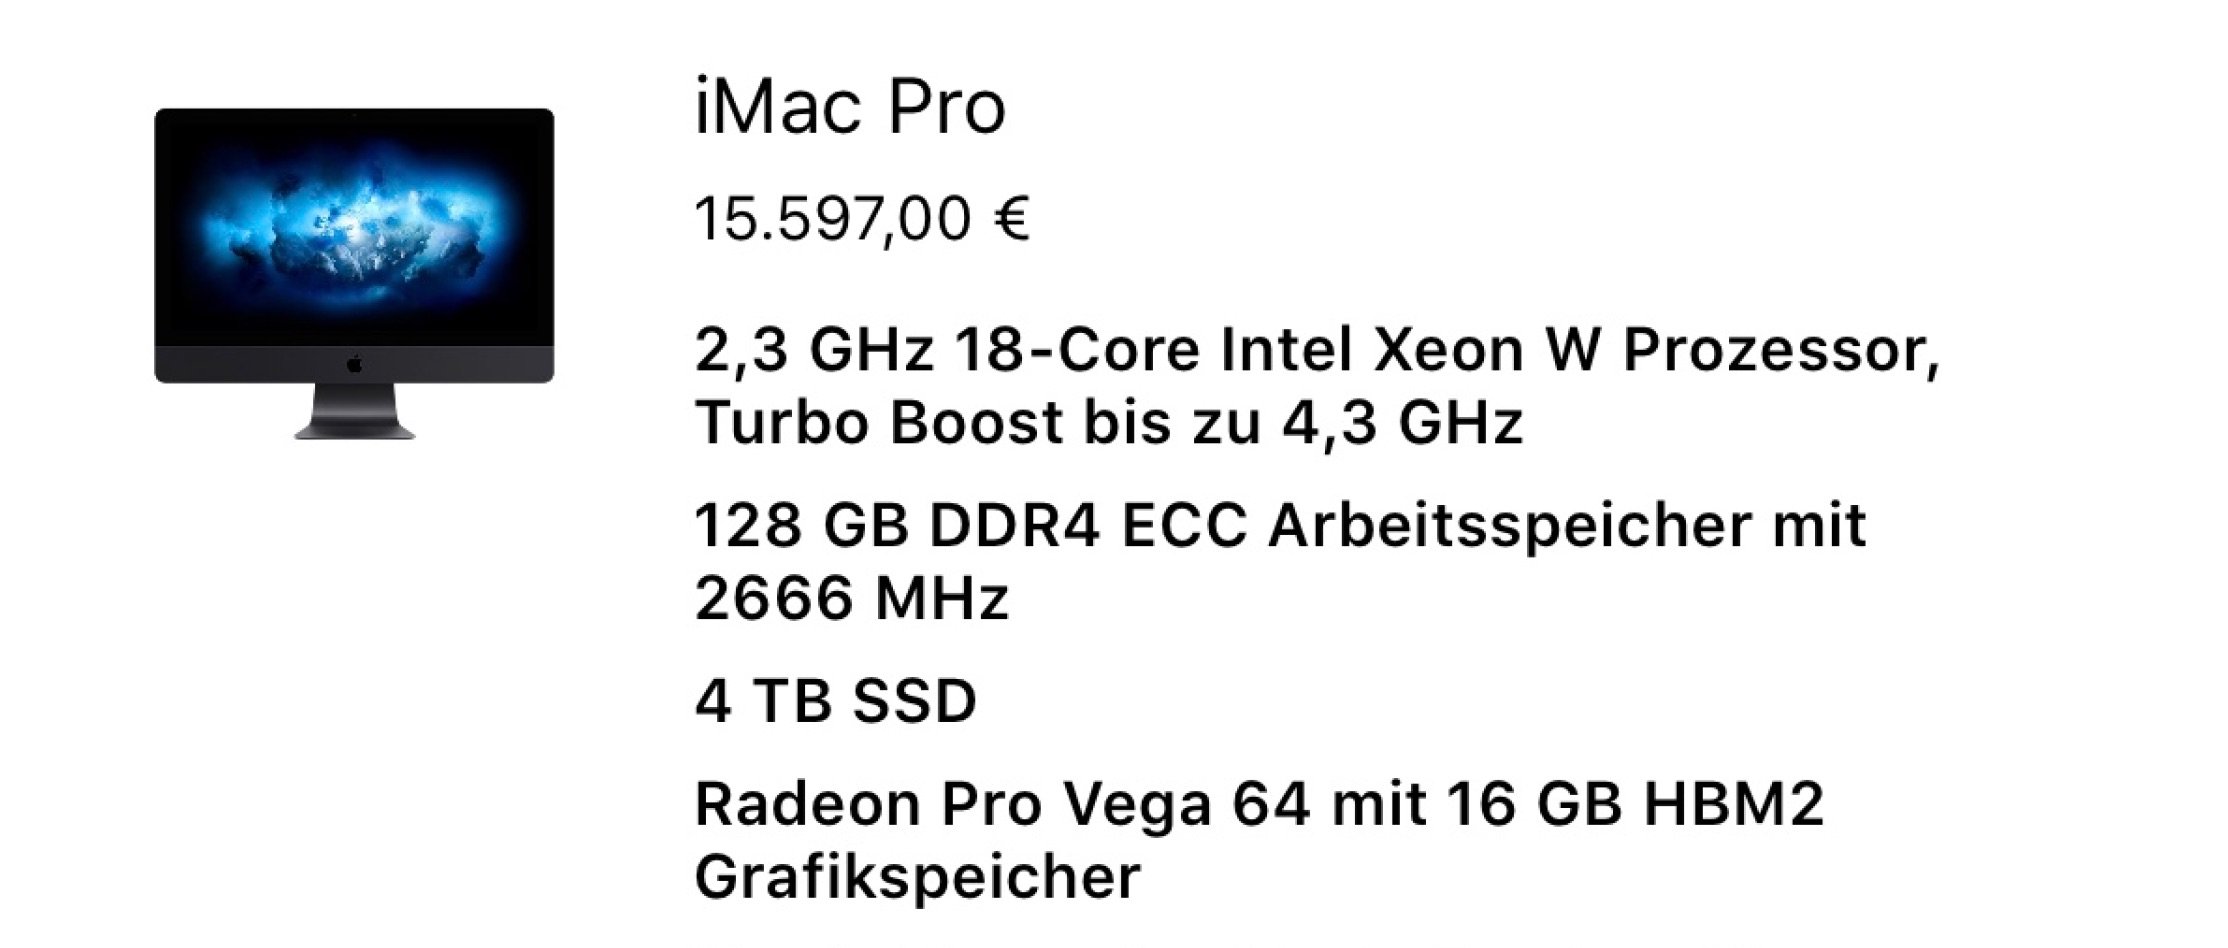 Schnäppchen: iMac Pro Preise von 5499 bis 16000 Euro! 6